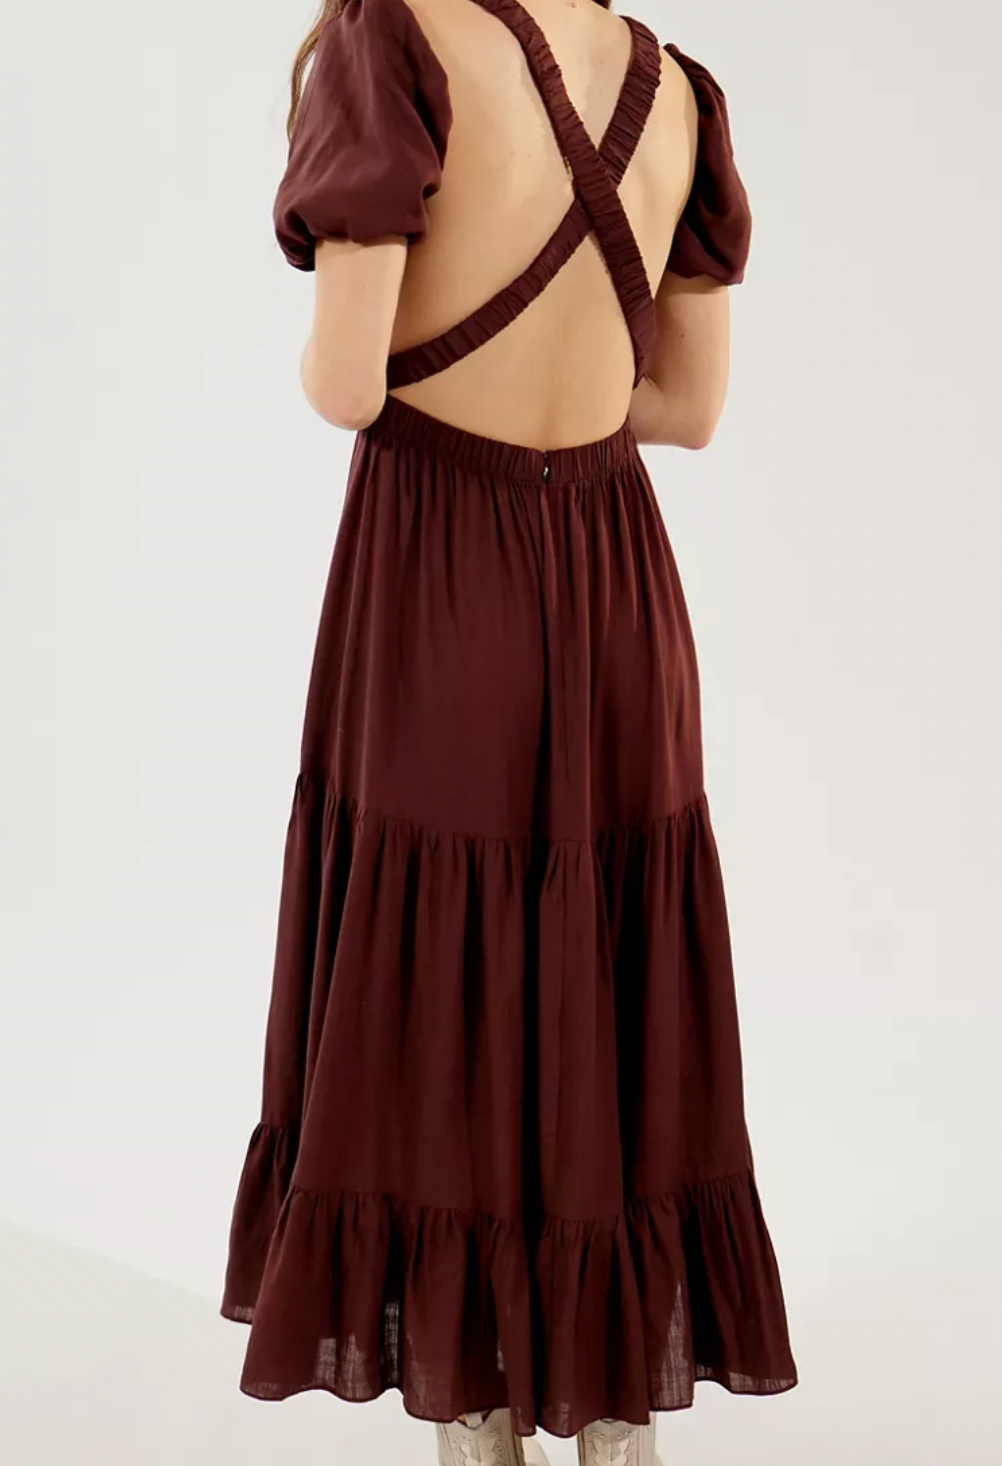 Glamorous (Brown Dress)